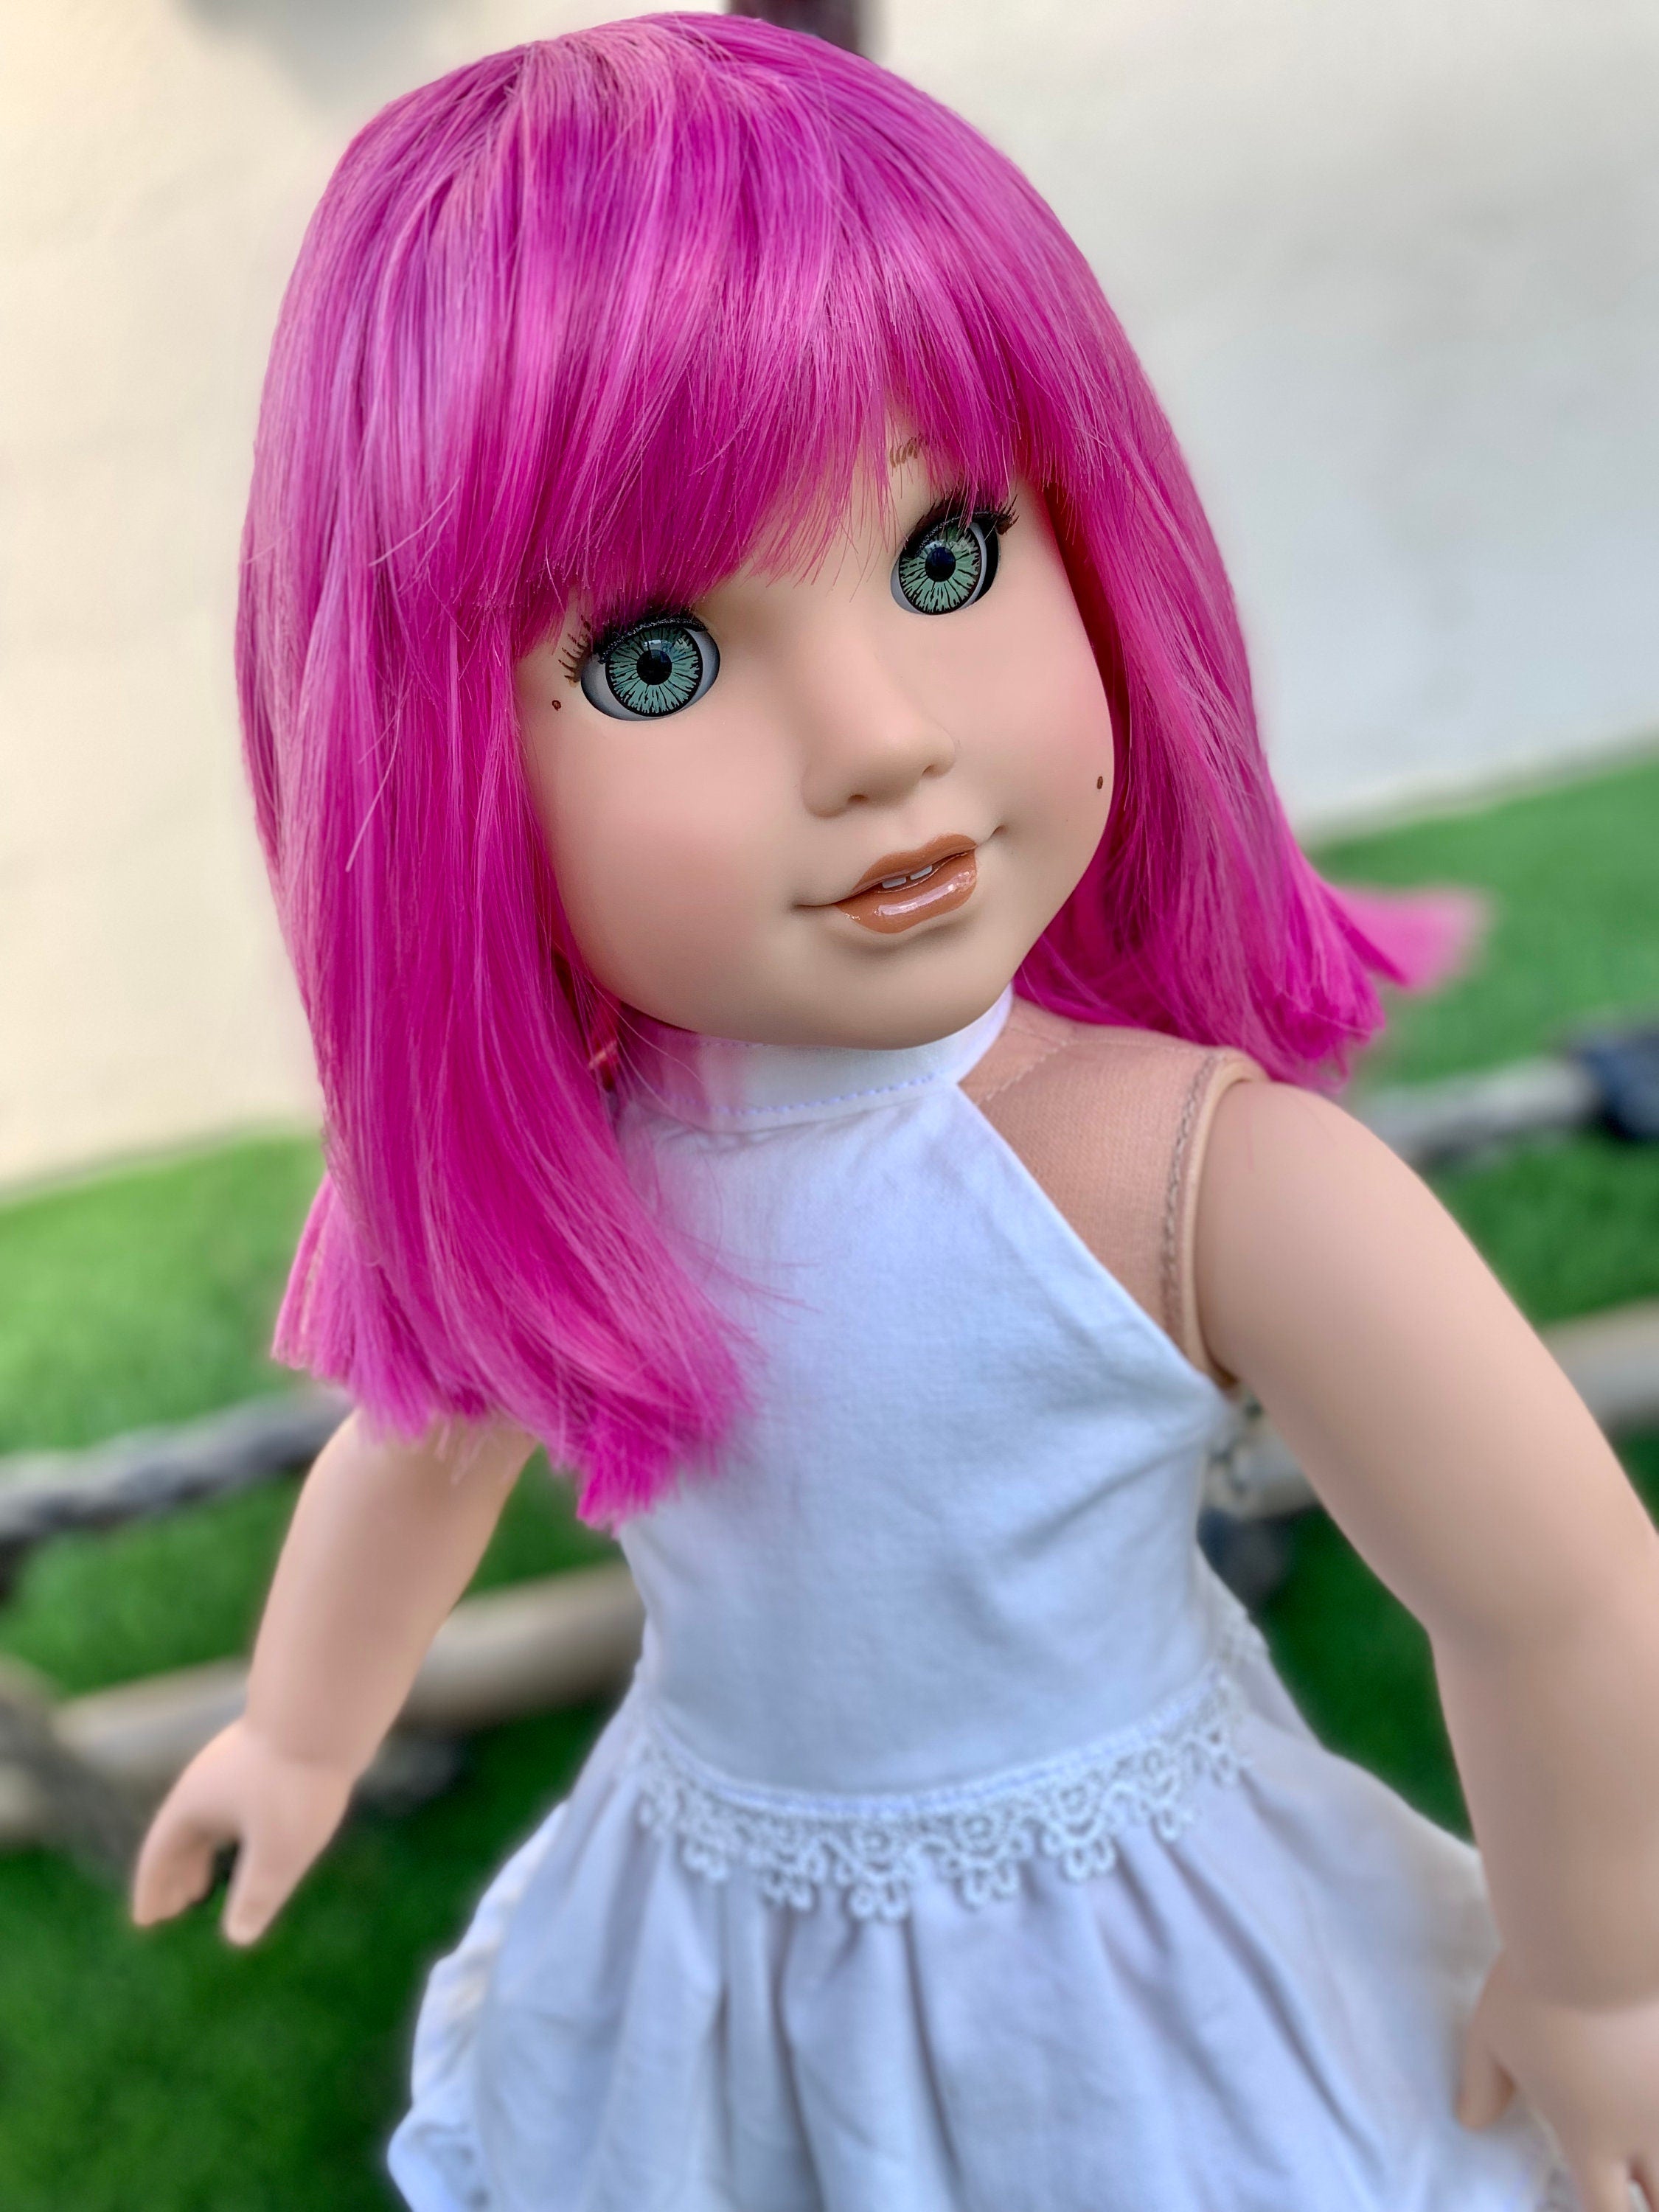 Custom doll wig for 18" American Girl Dolls - Heat Safe - Tangle Resistant - fits 10-11" head size of 18" dolls OG Blythe BJD Gotz Hot pink